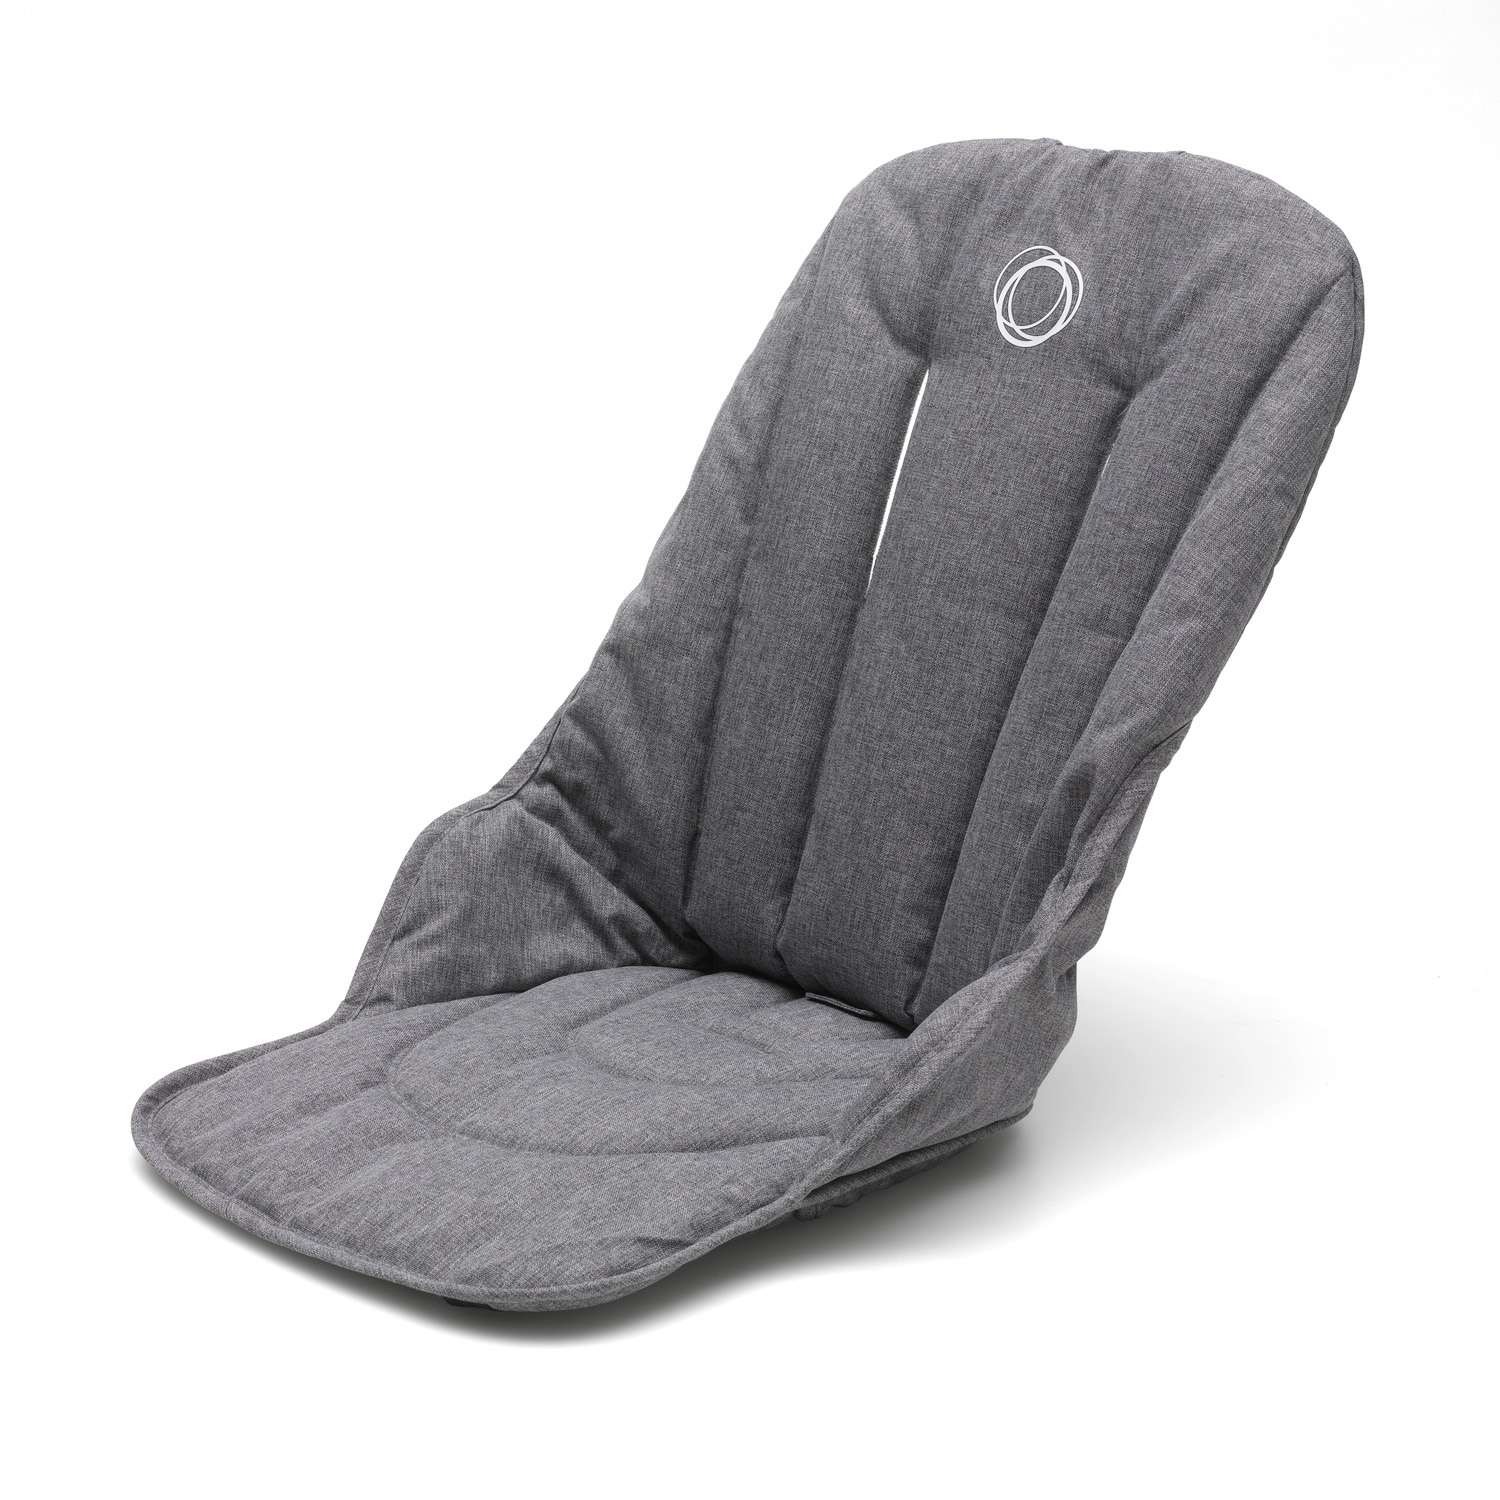 Сиденье для коляски Bugaboo Fox Seat fabric Grey Melange 230240GM01 230240GM01 - фото 1